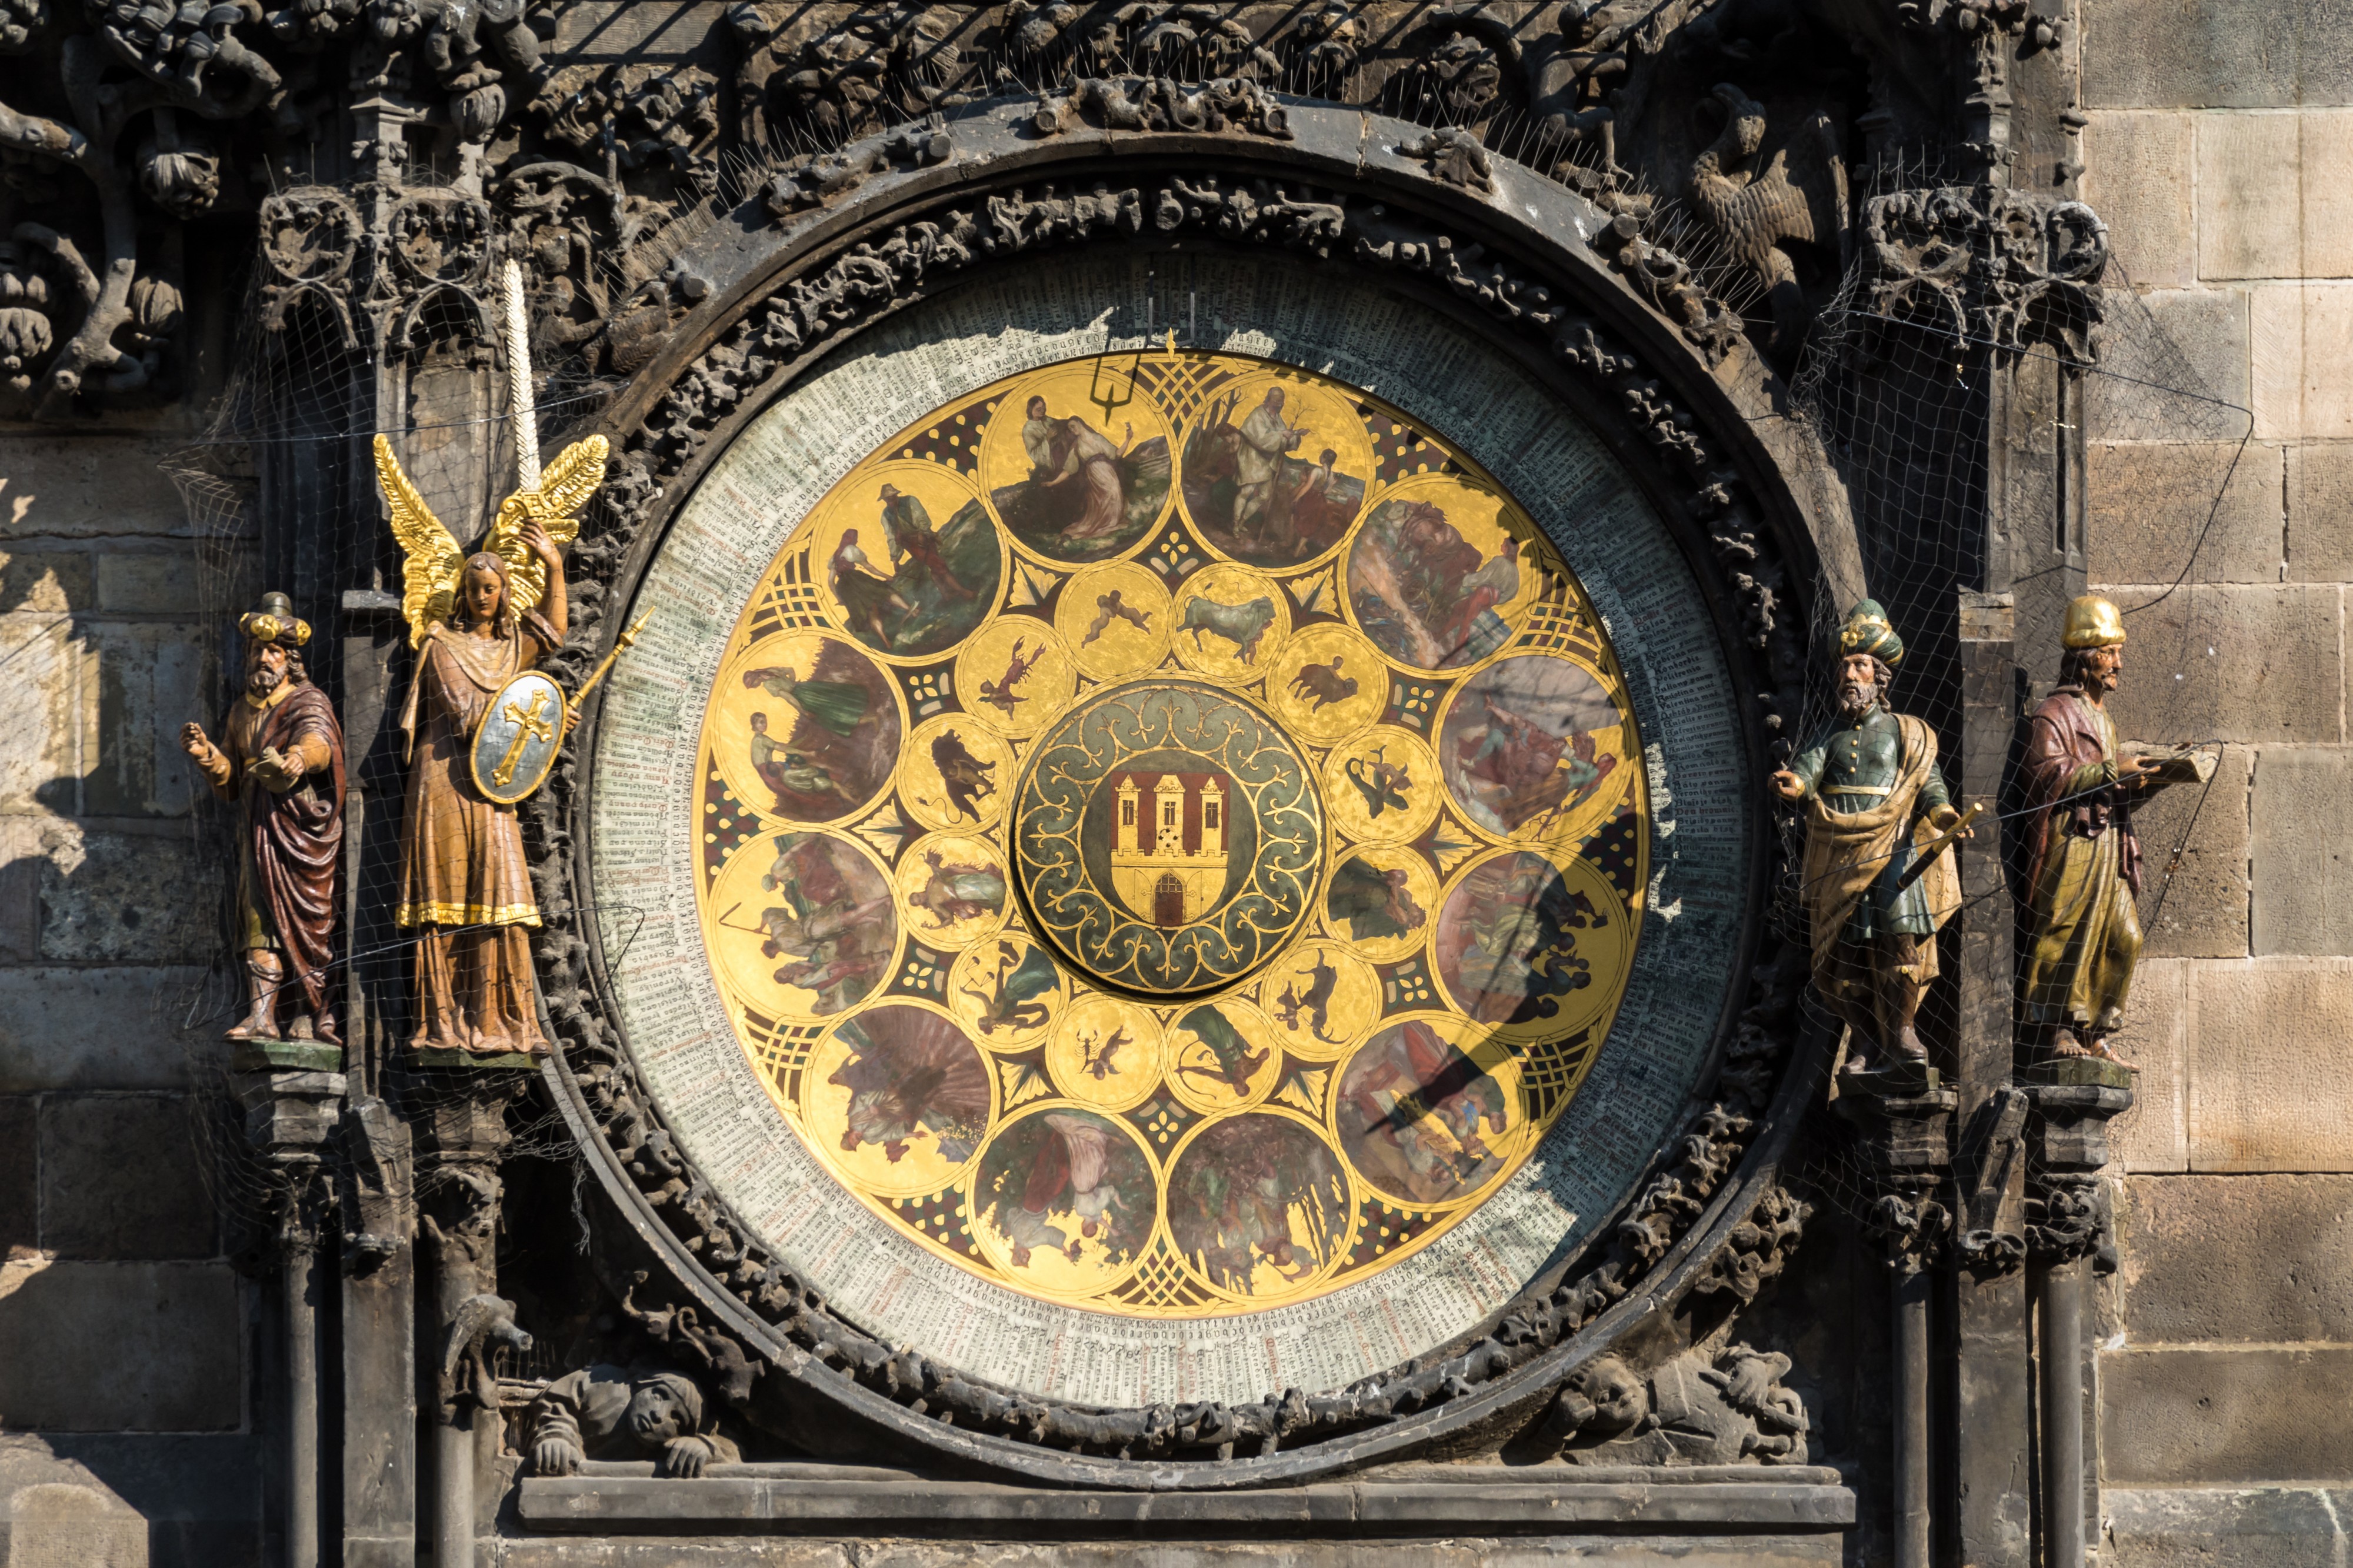 Praha Astronomical Clock Calendar 01